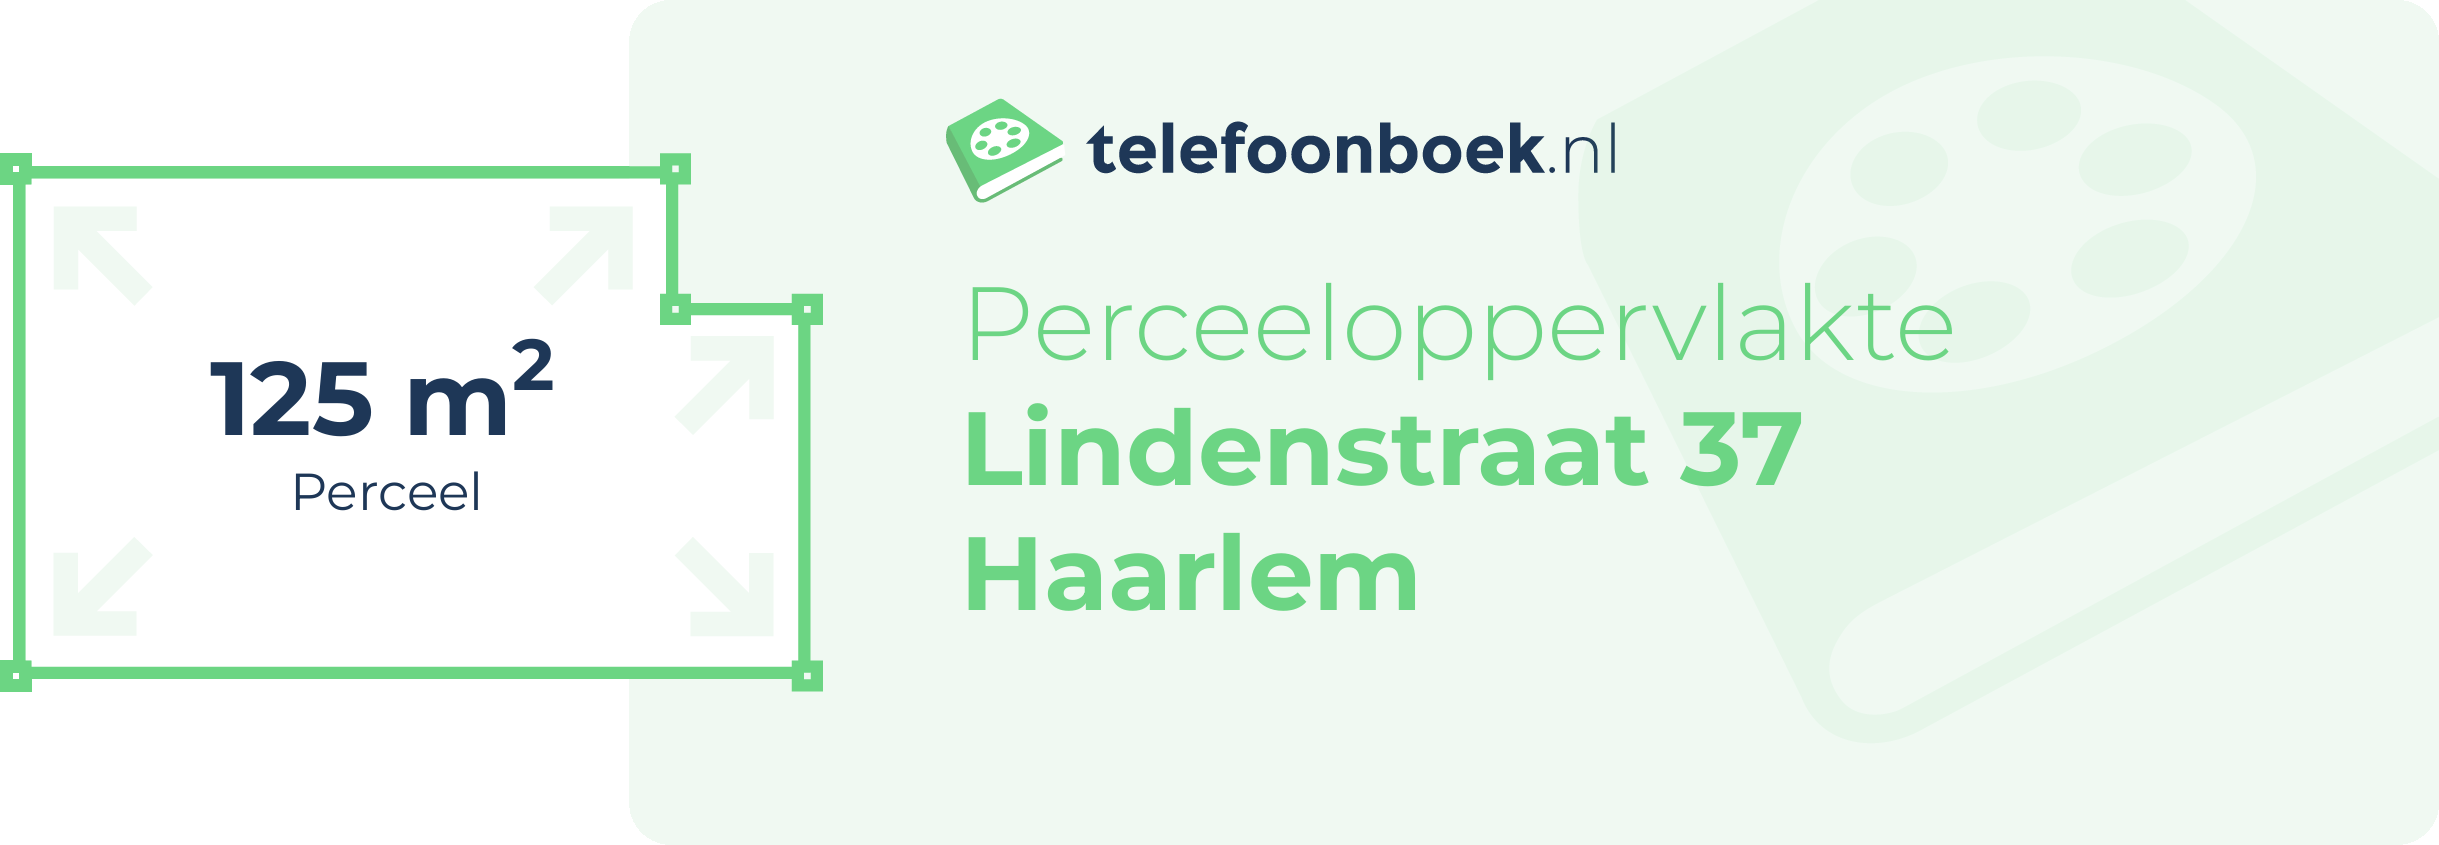 Perceeloppervlakte Lindenstraat 37 Haarlem